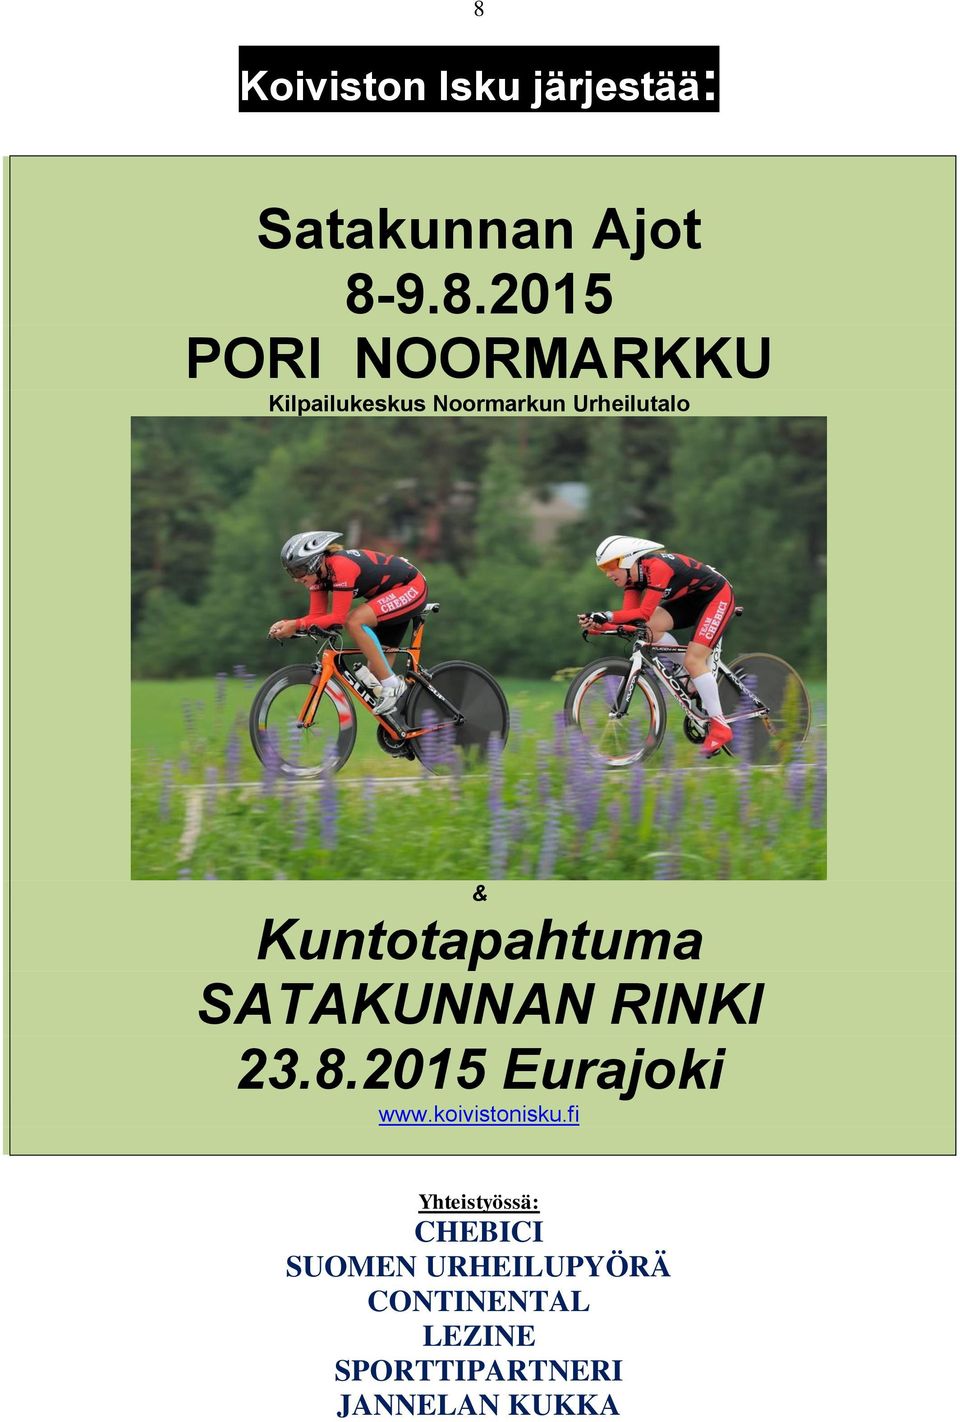 SATAKUNNAN RINKI 23.8.2015 Eurajoki www.koivistonisku.